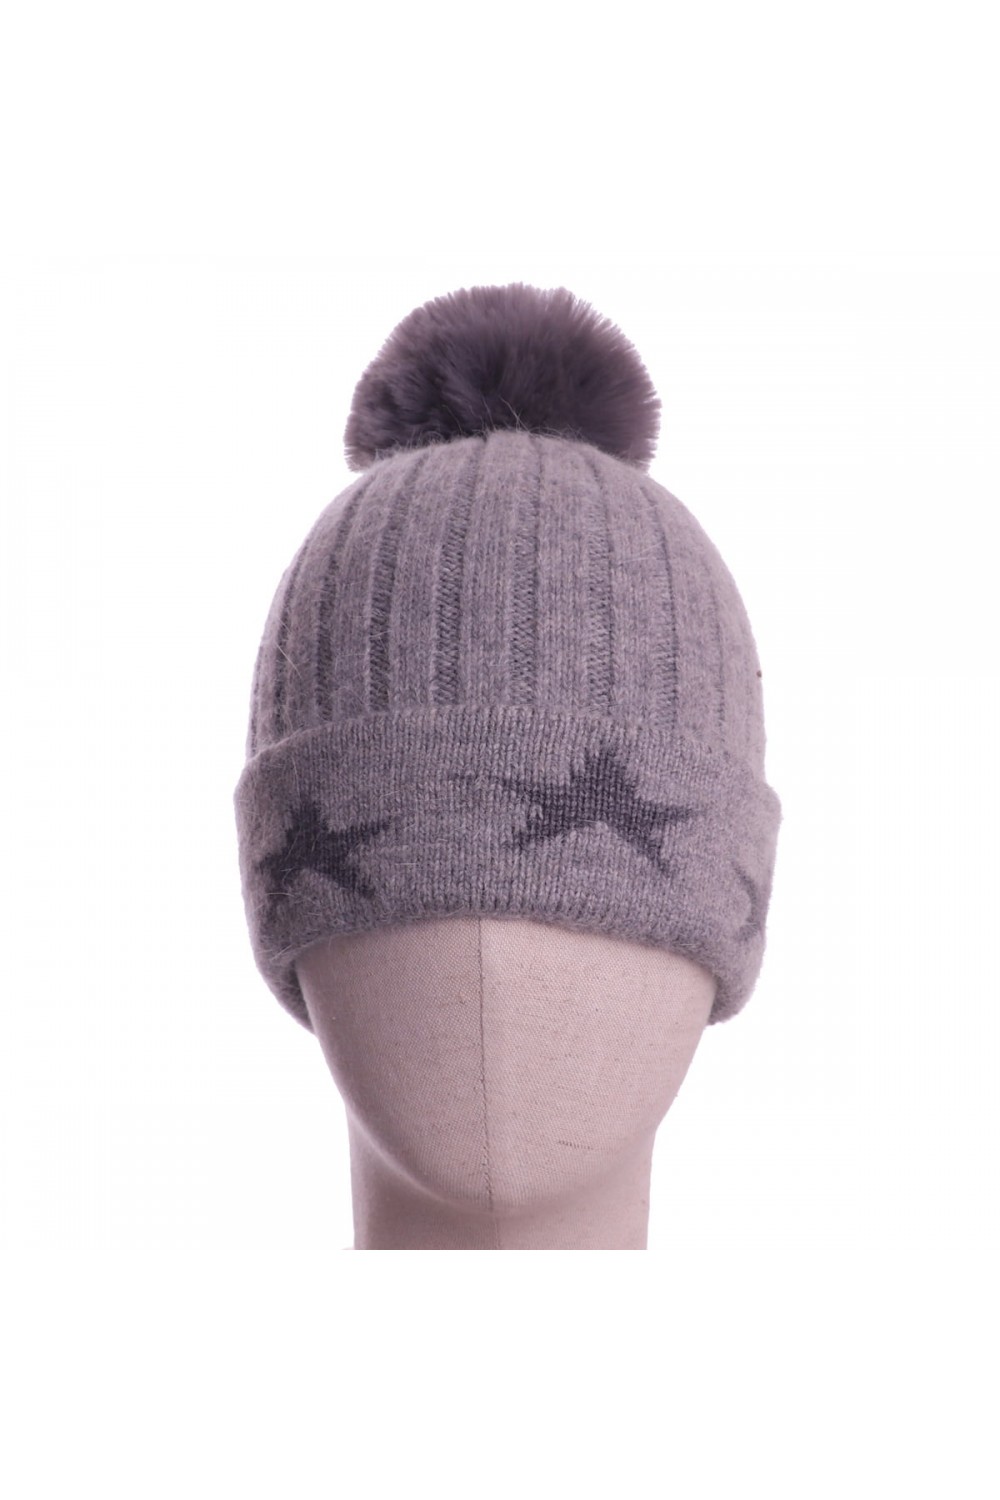 Zelly Stars Pom Pom Hat Grey